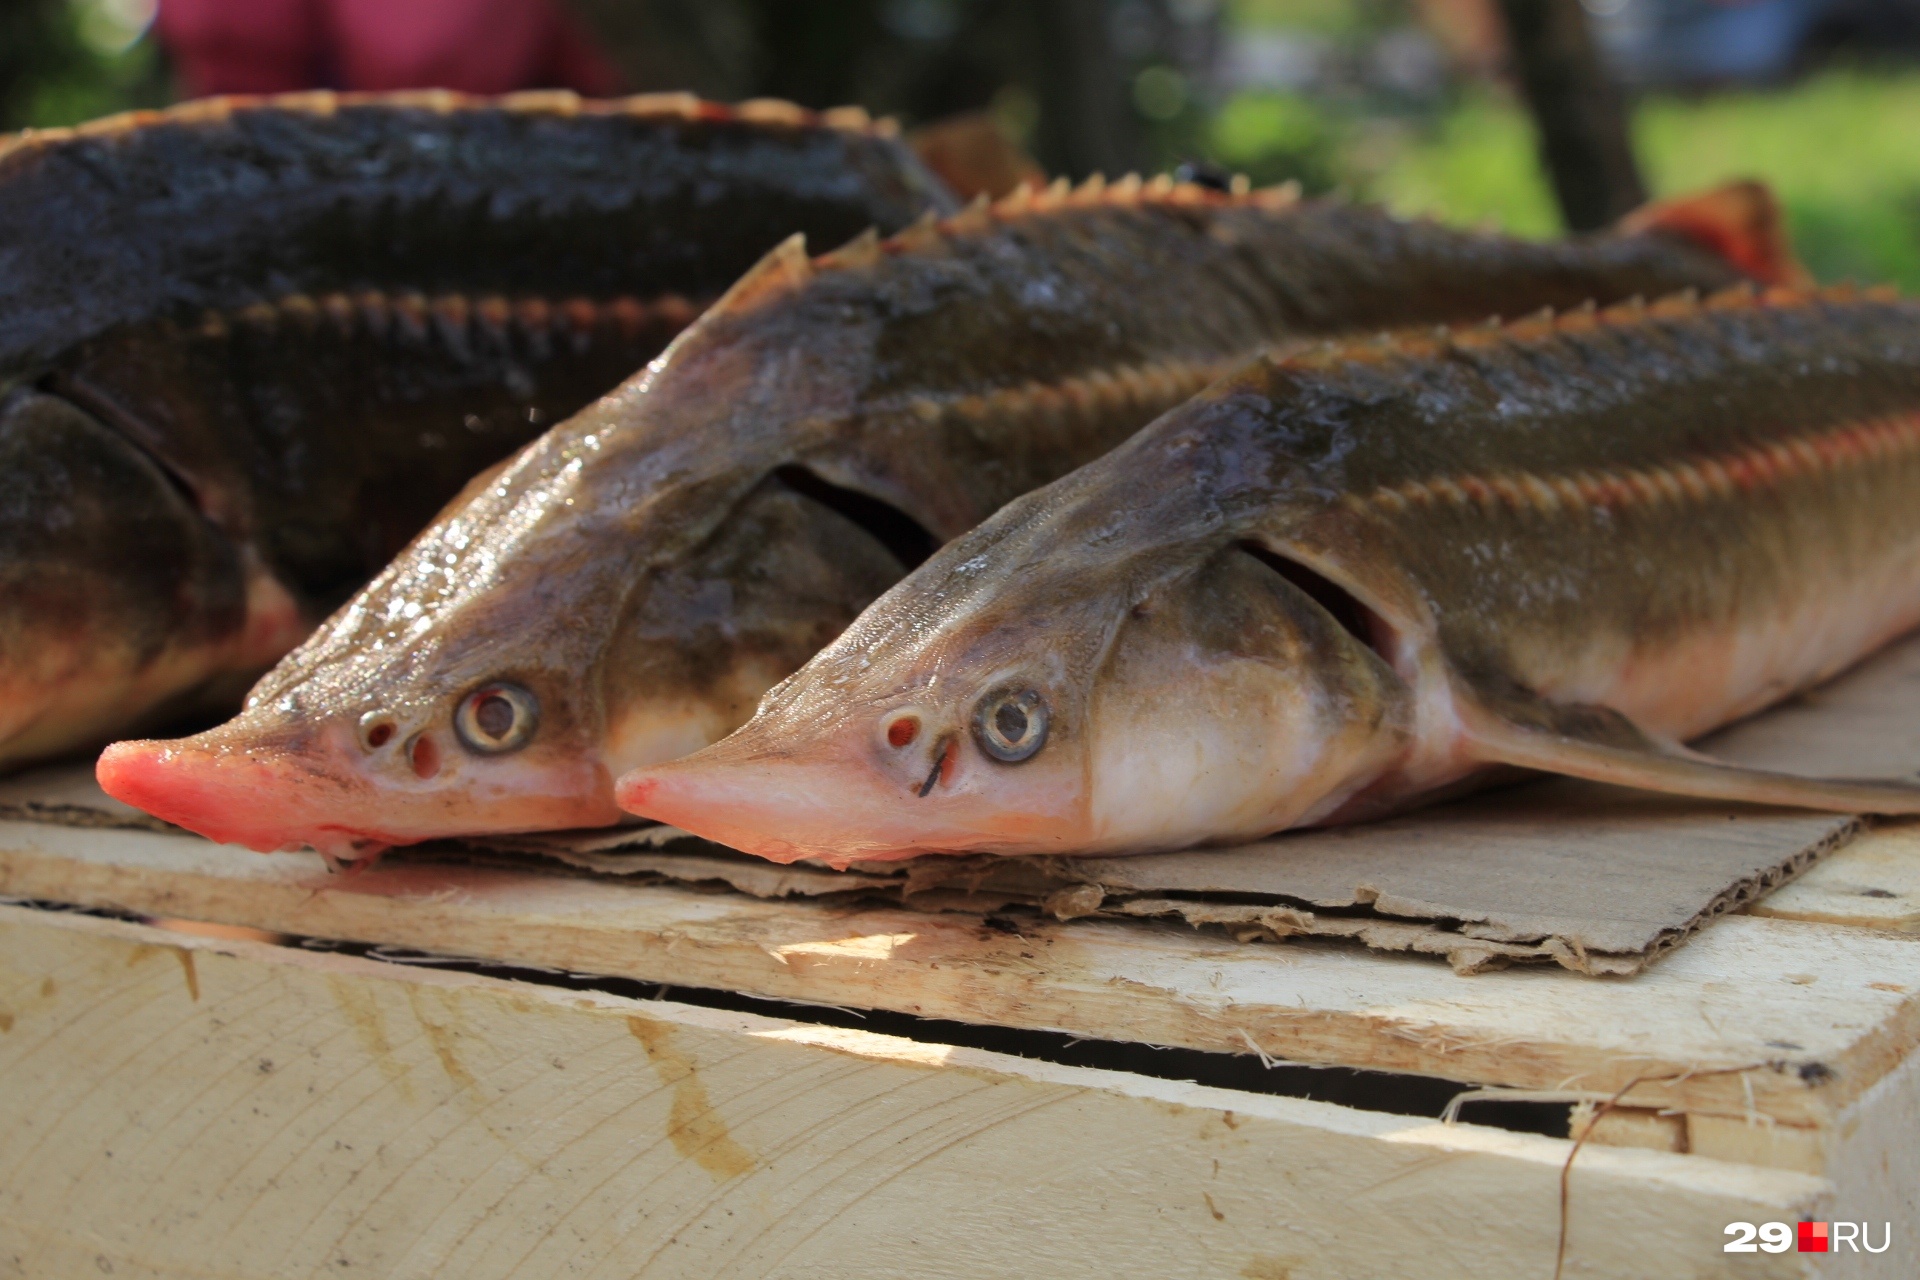 Объем производства рыбы вырос почти в 2 раза за последние 5 лет в Архангельской области